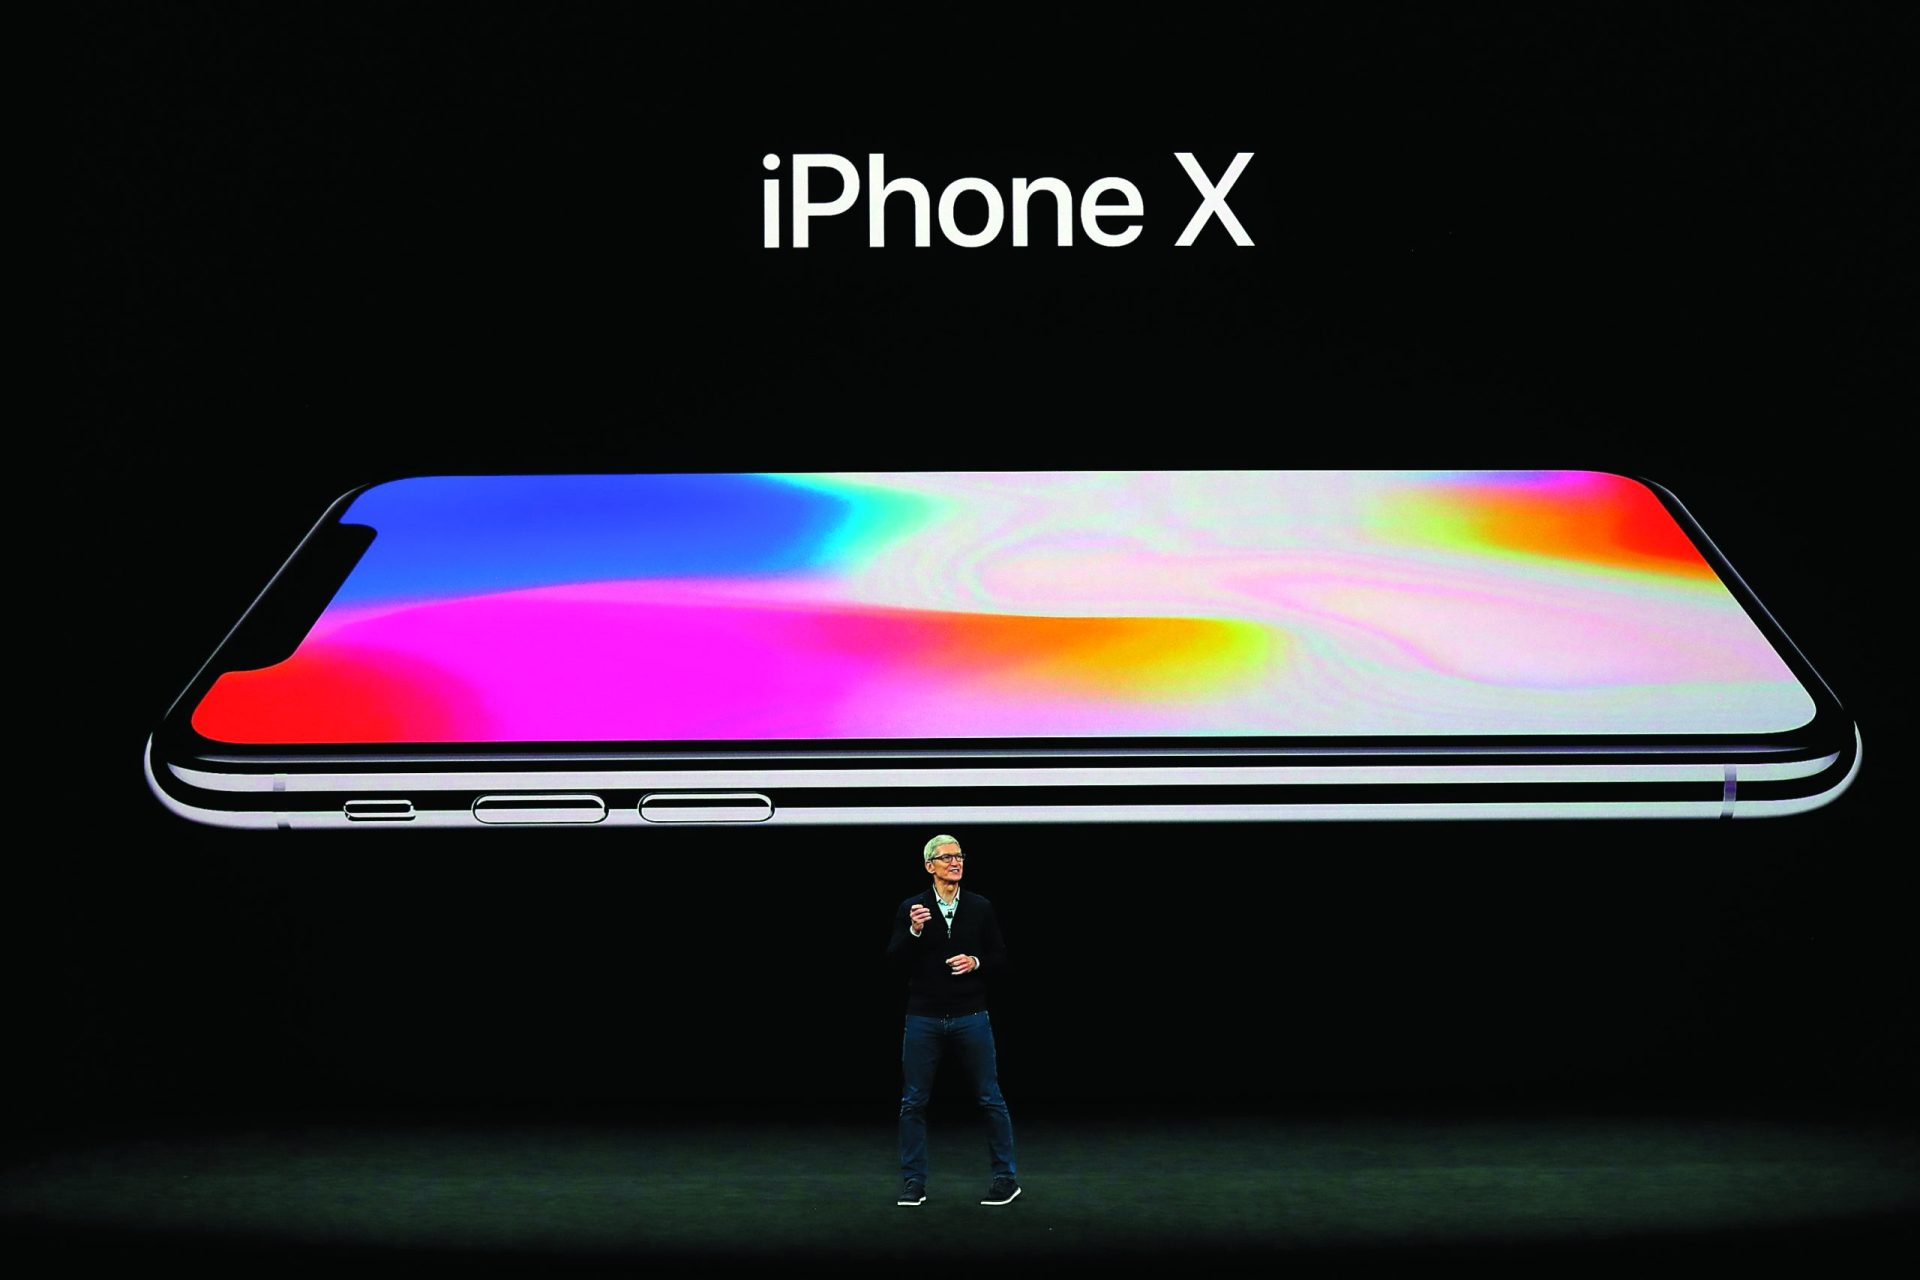 Tecnologia. iPhone X é desbolqueado com o olhar e tem mais bateria